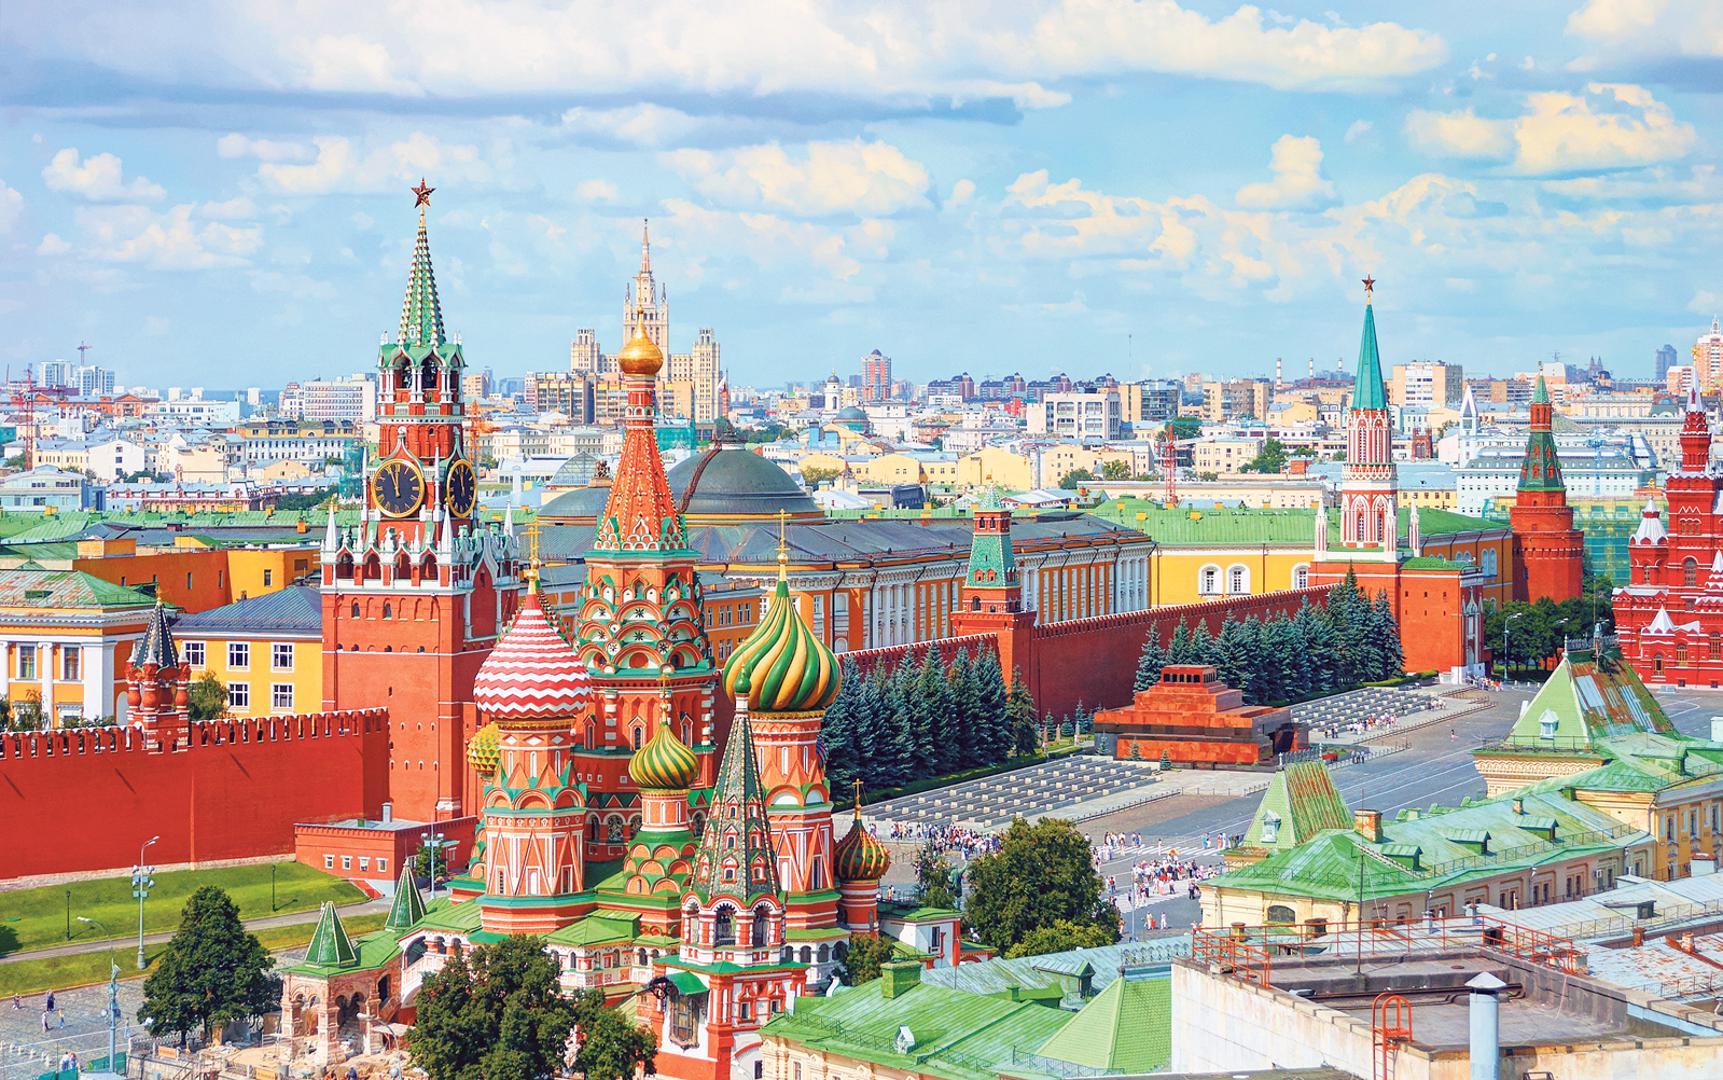 Moskovski Crveni trg mnogi smatraju
najljepšim trgom u Europi